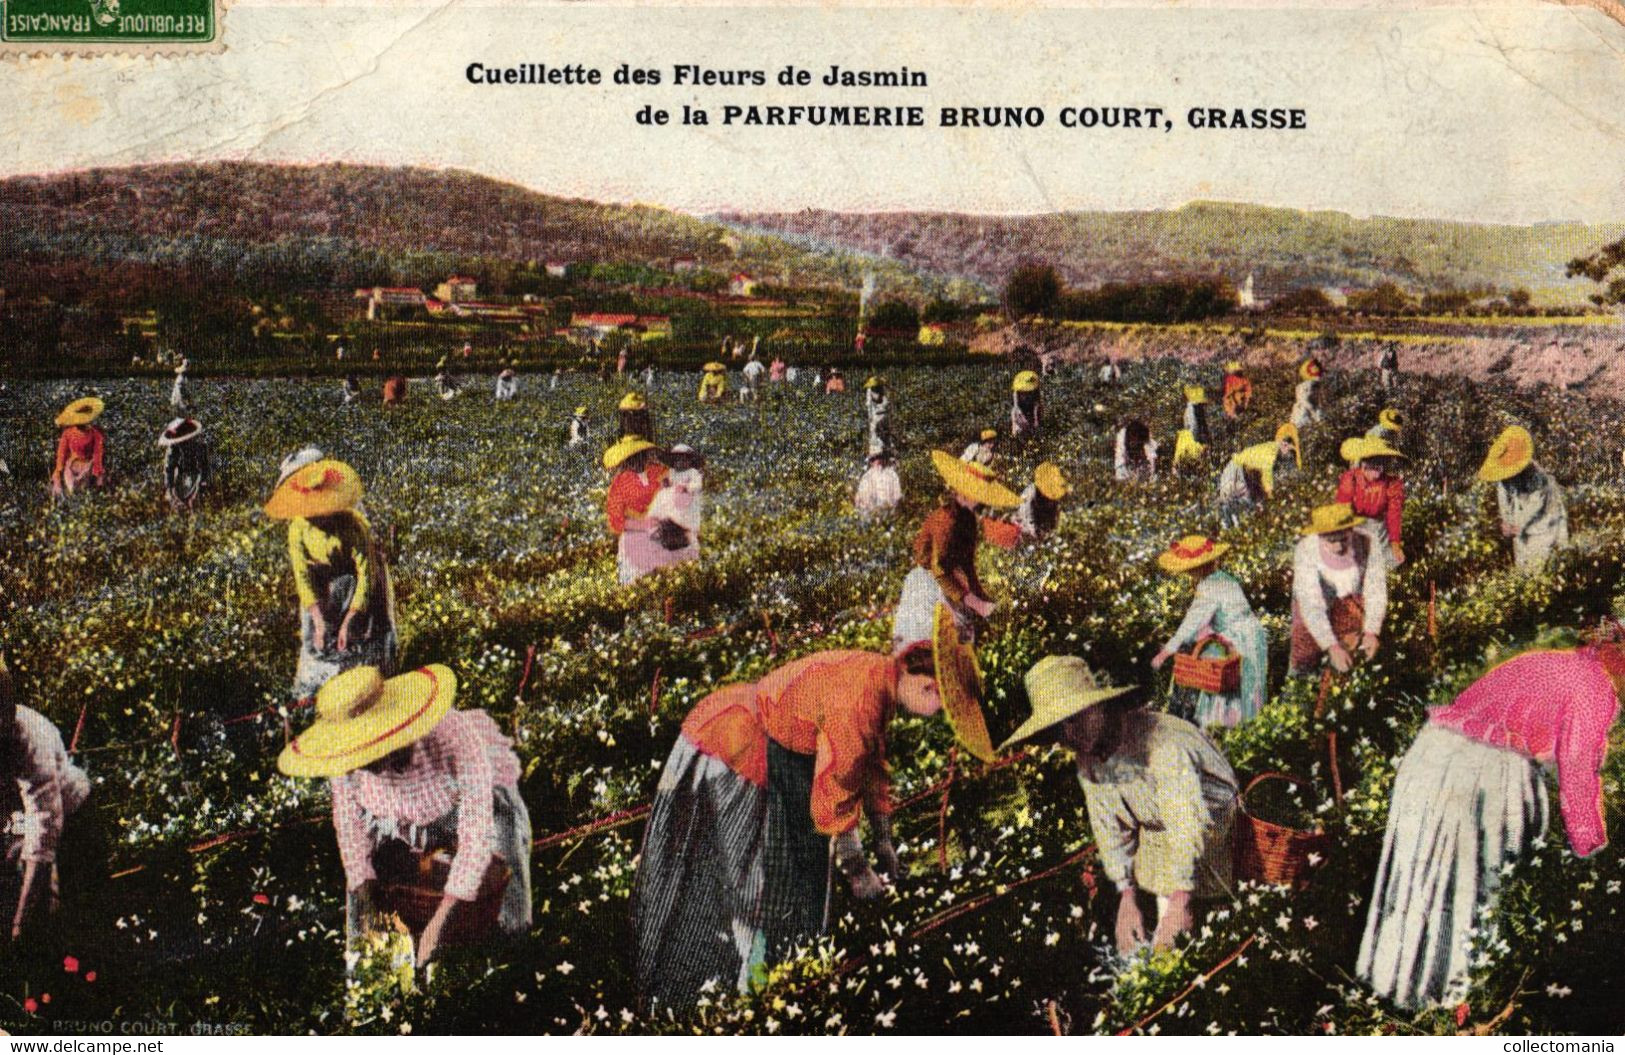 6 cartes chromo Fabrication de l'Essence de Roses 1908  2CP Cueilette des fleurs de Jasmin Parfumerie Bruno Court Grasse